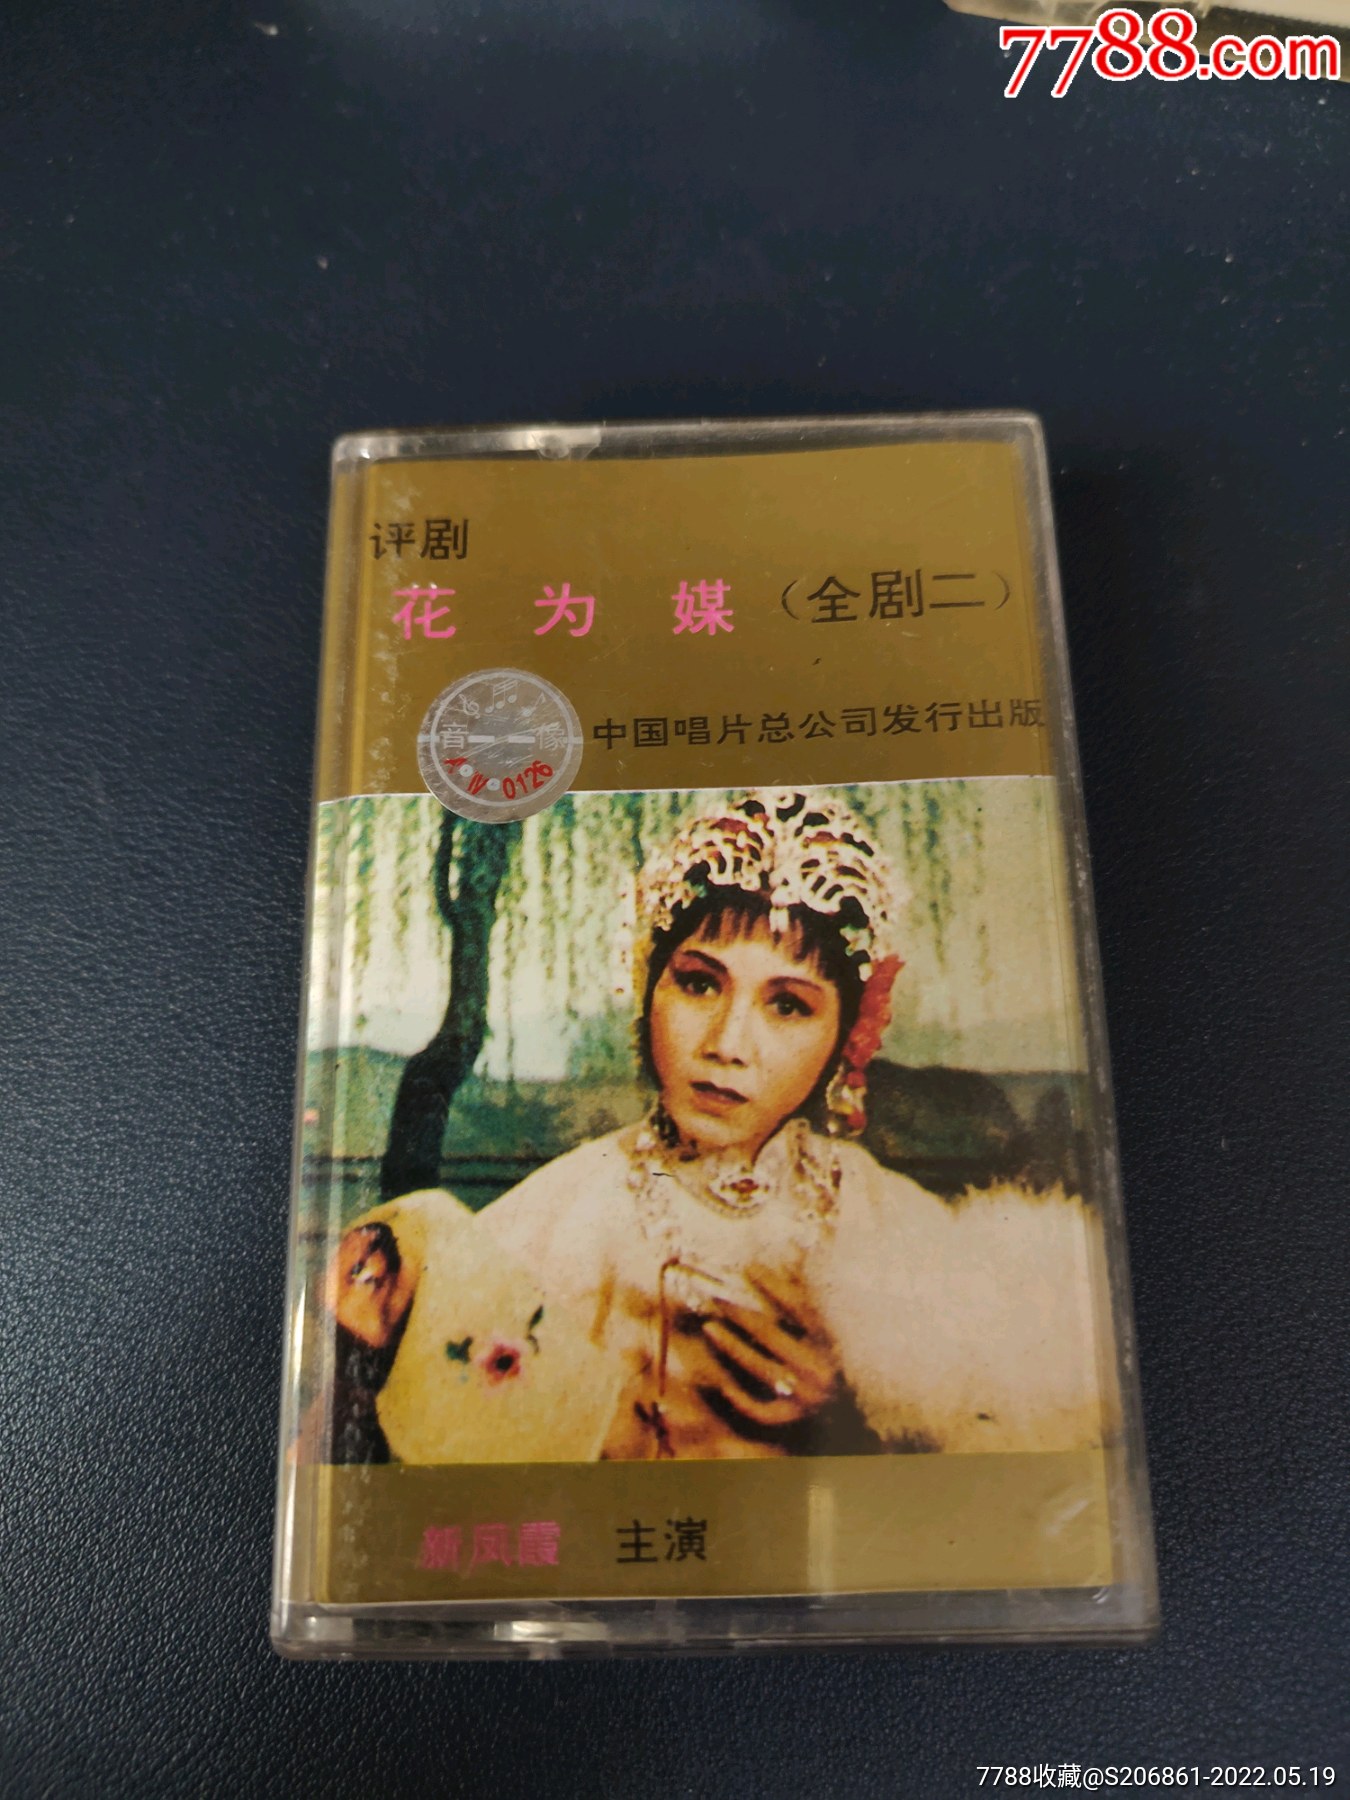 稀少版本评剧花为媒全剧二87年老磁带新凤霞主演中国唱片总公司出版